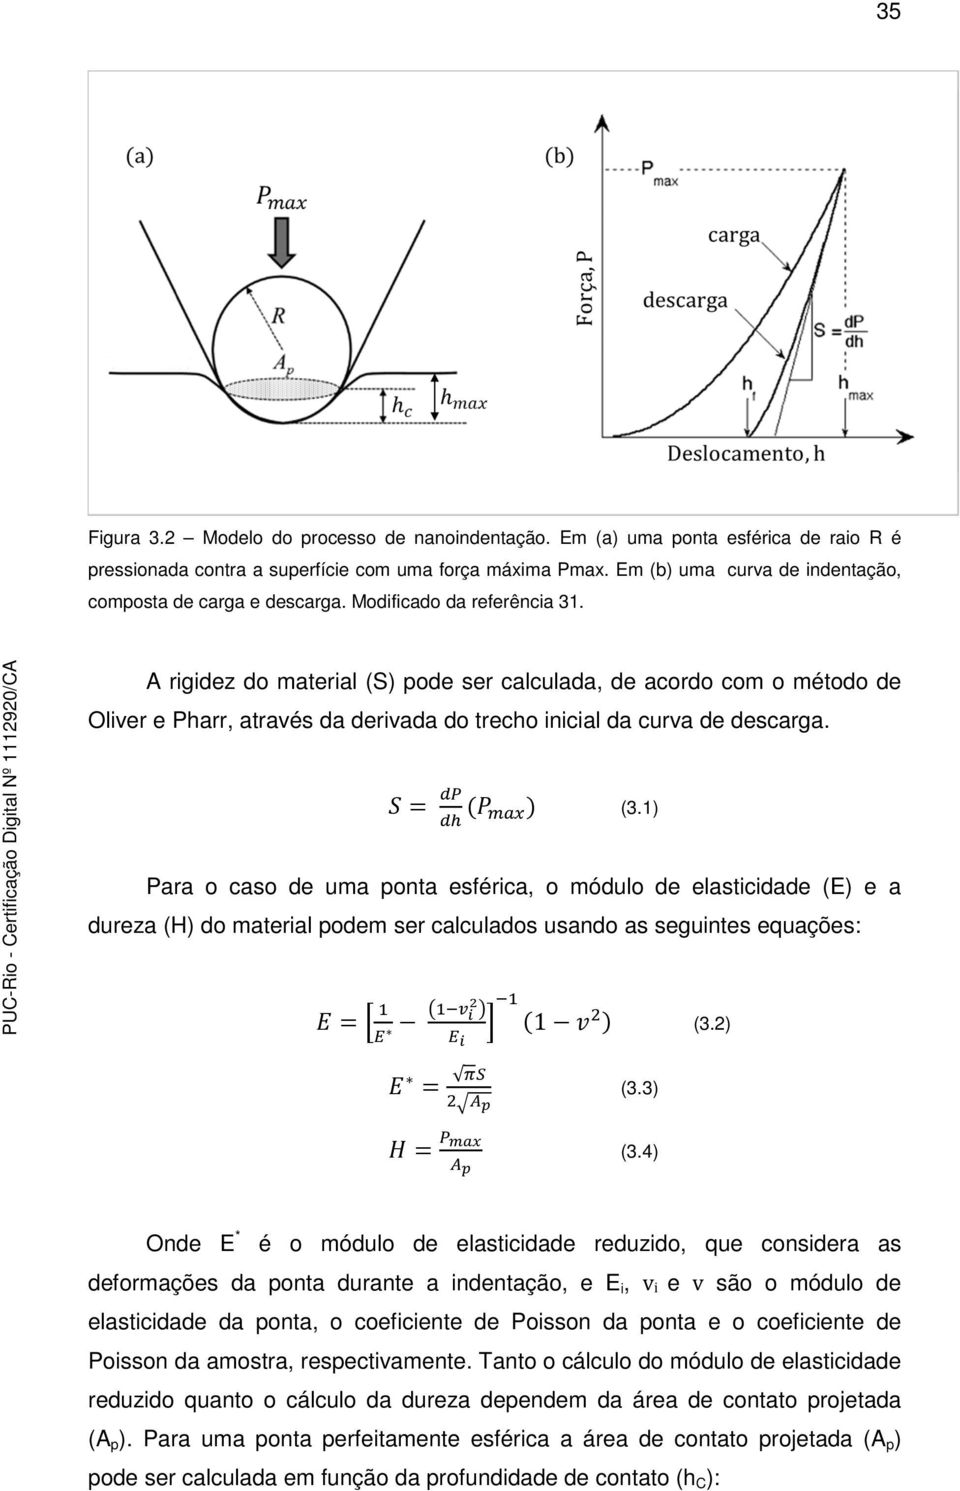 A rigidez do material (S) pode ser calculada, de acordo com o método de Oliver e Pharr, através da derivada do trecho inicial da curva de descarga. (3.